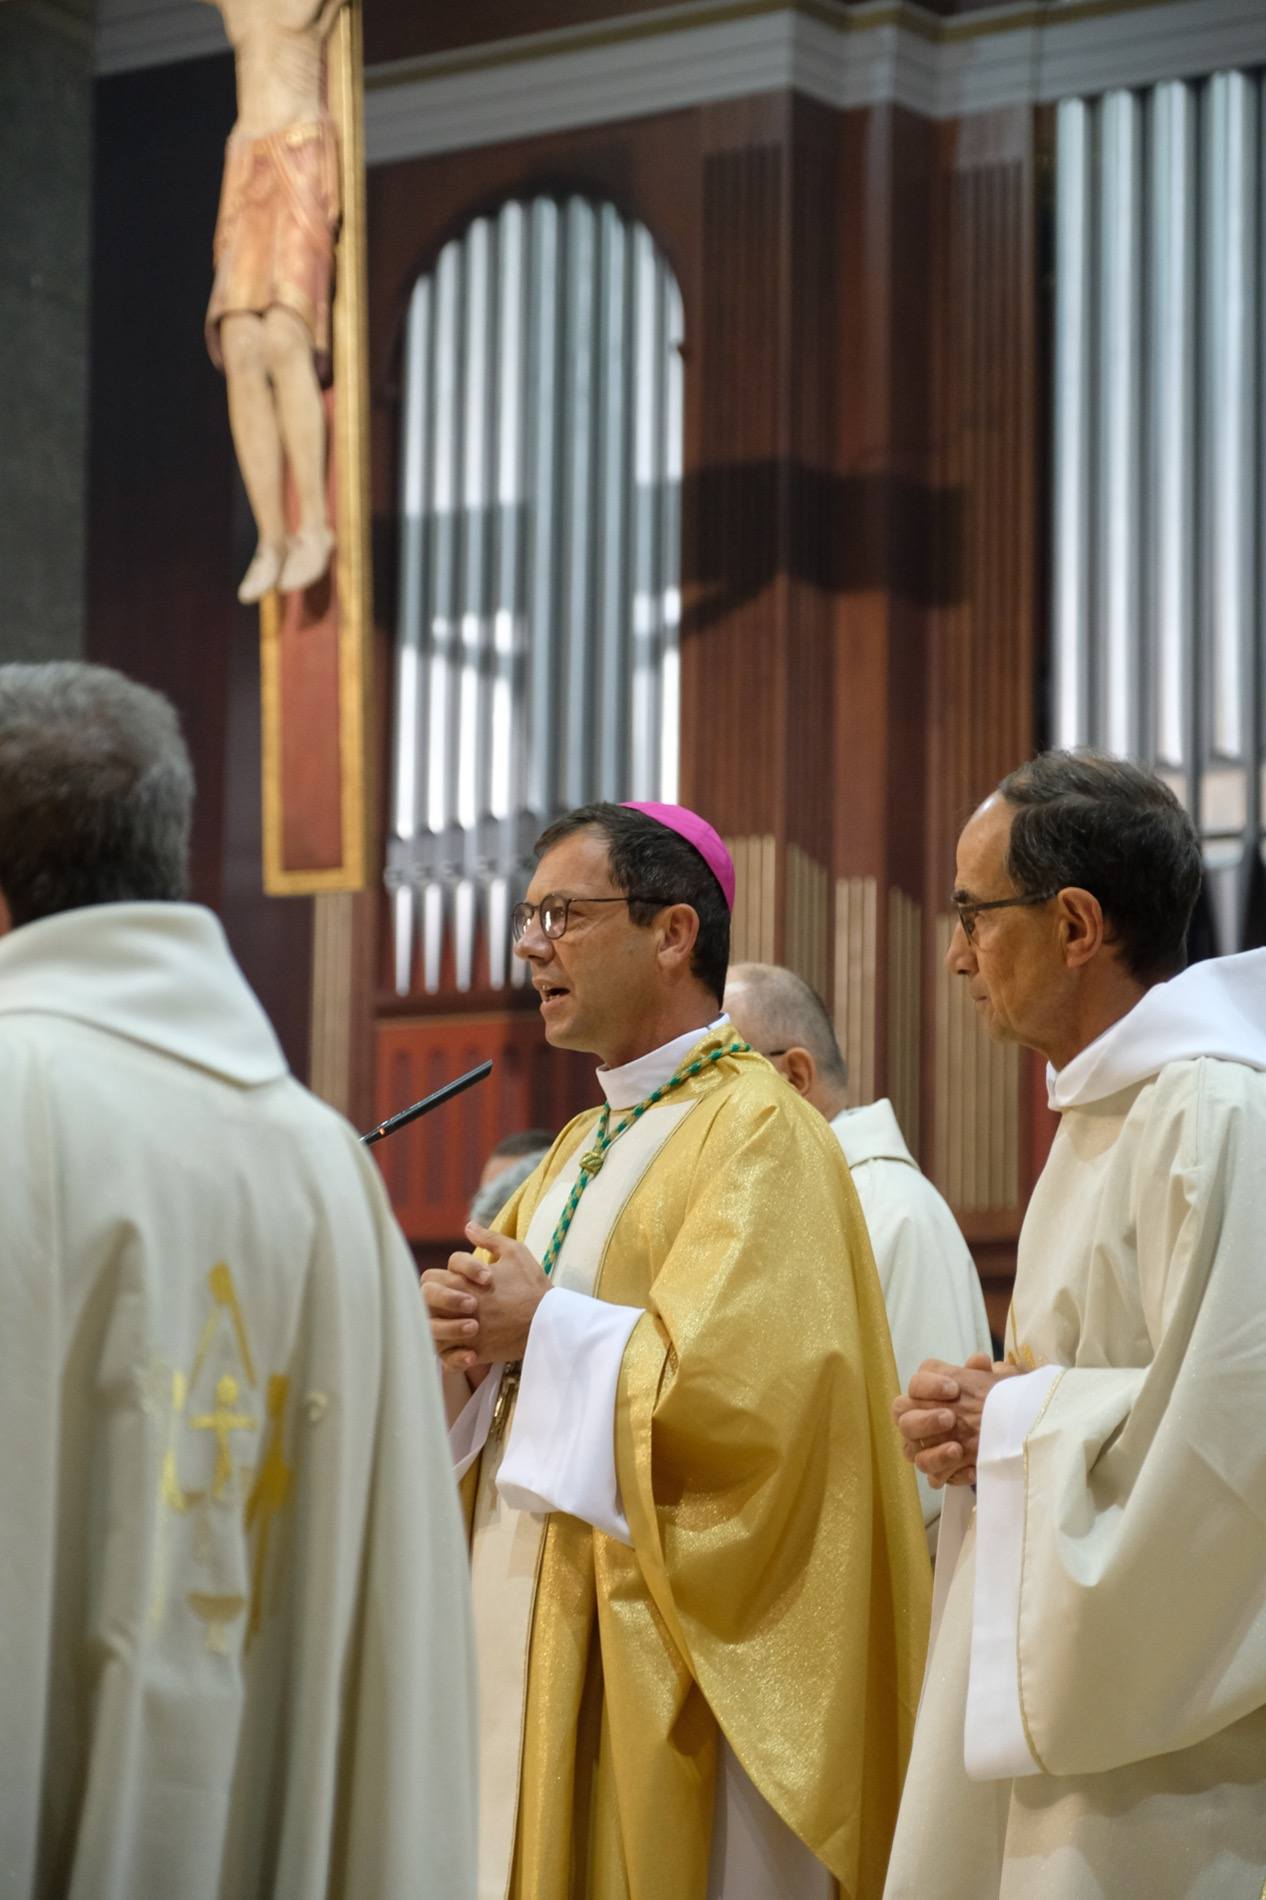 Ordinations diaconales de Charles-Alban Guez et Pierre-François Émourgeon